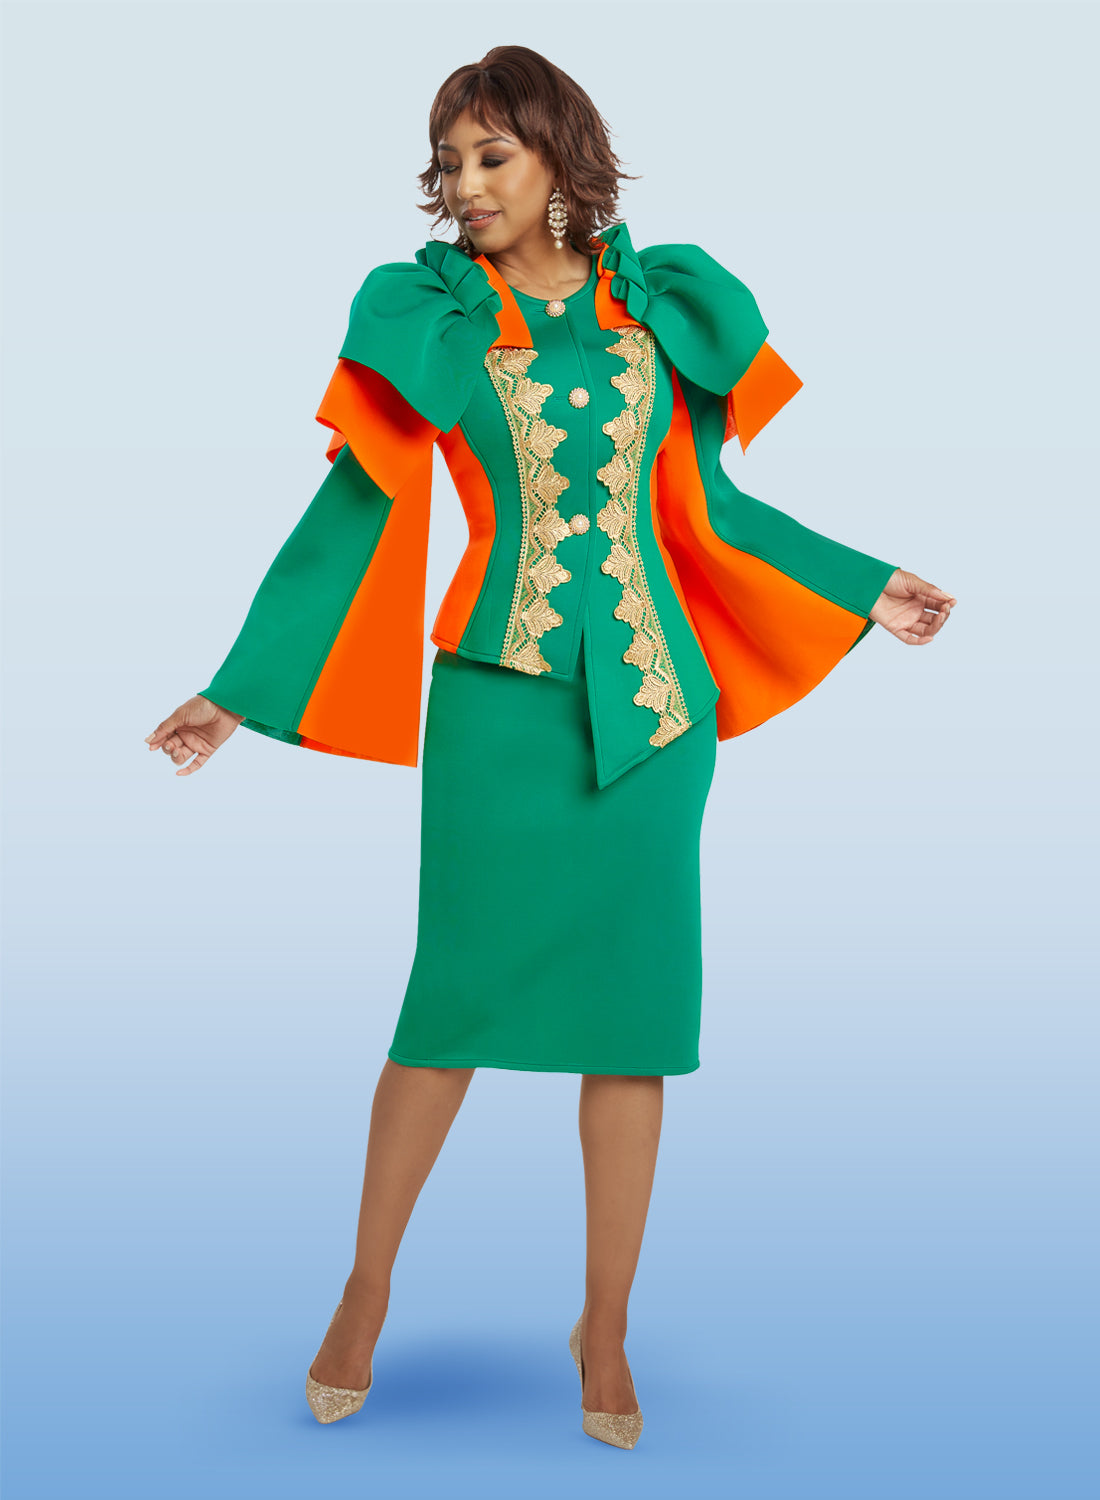 Donna Vinci - 12034 - Kelly Orange - Two-tone Scuba Fabric with Lace Trim 2pc Skirt Suit